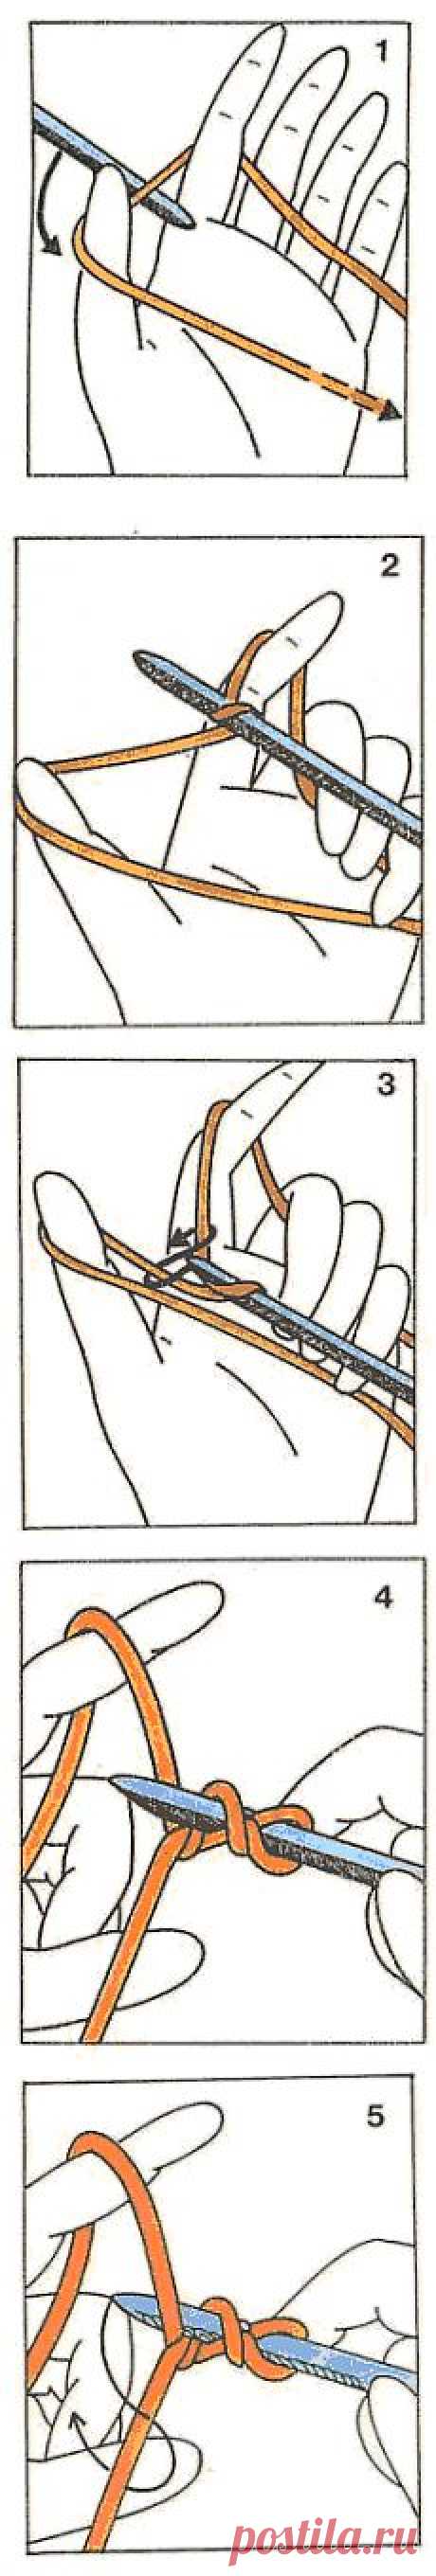 Школа вязания на спицах. Урок 6. Итальянский набор петель - спицы, петли, нить, палец